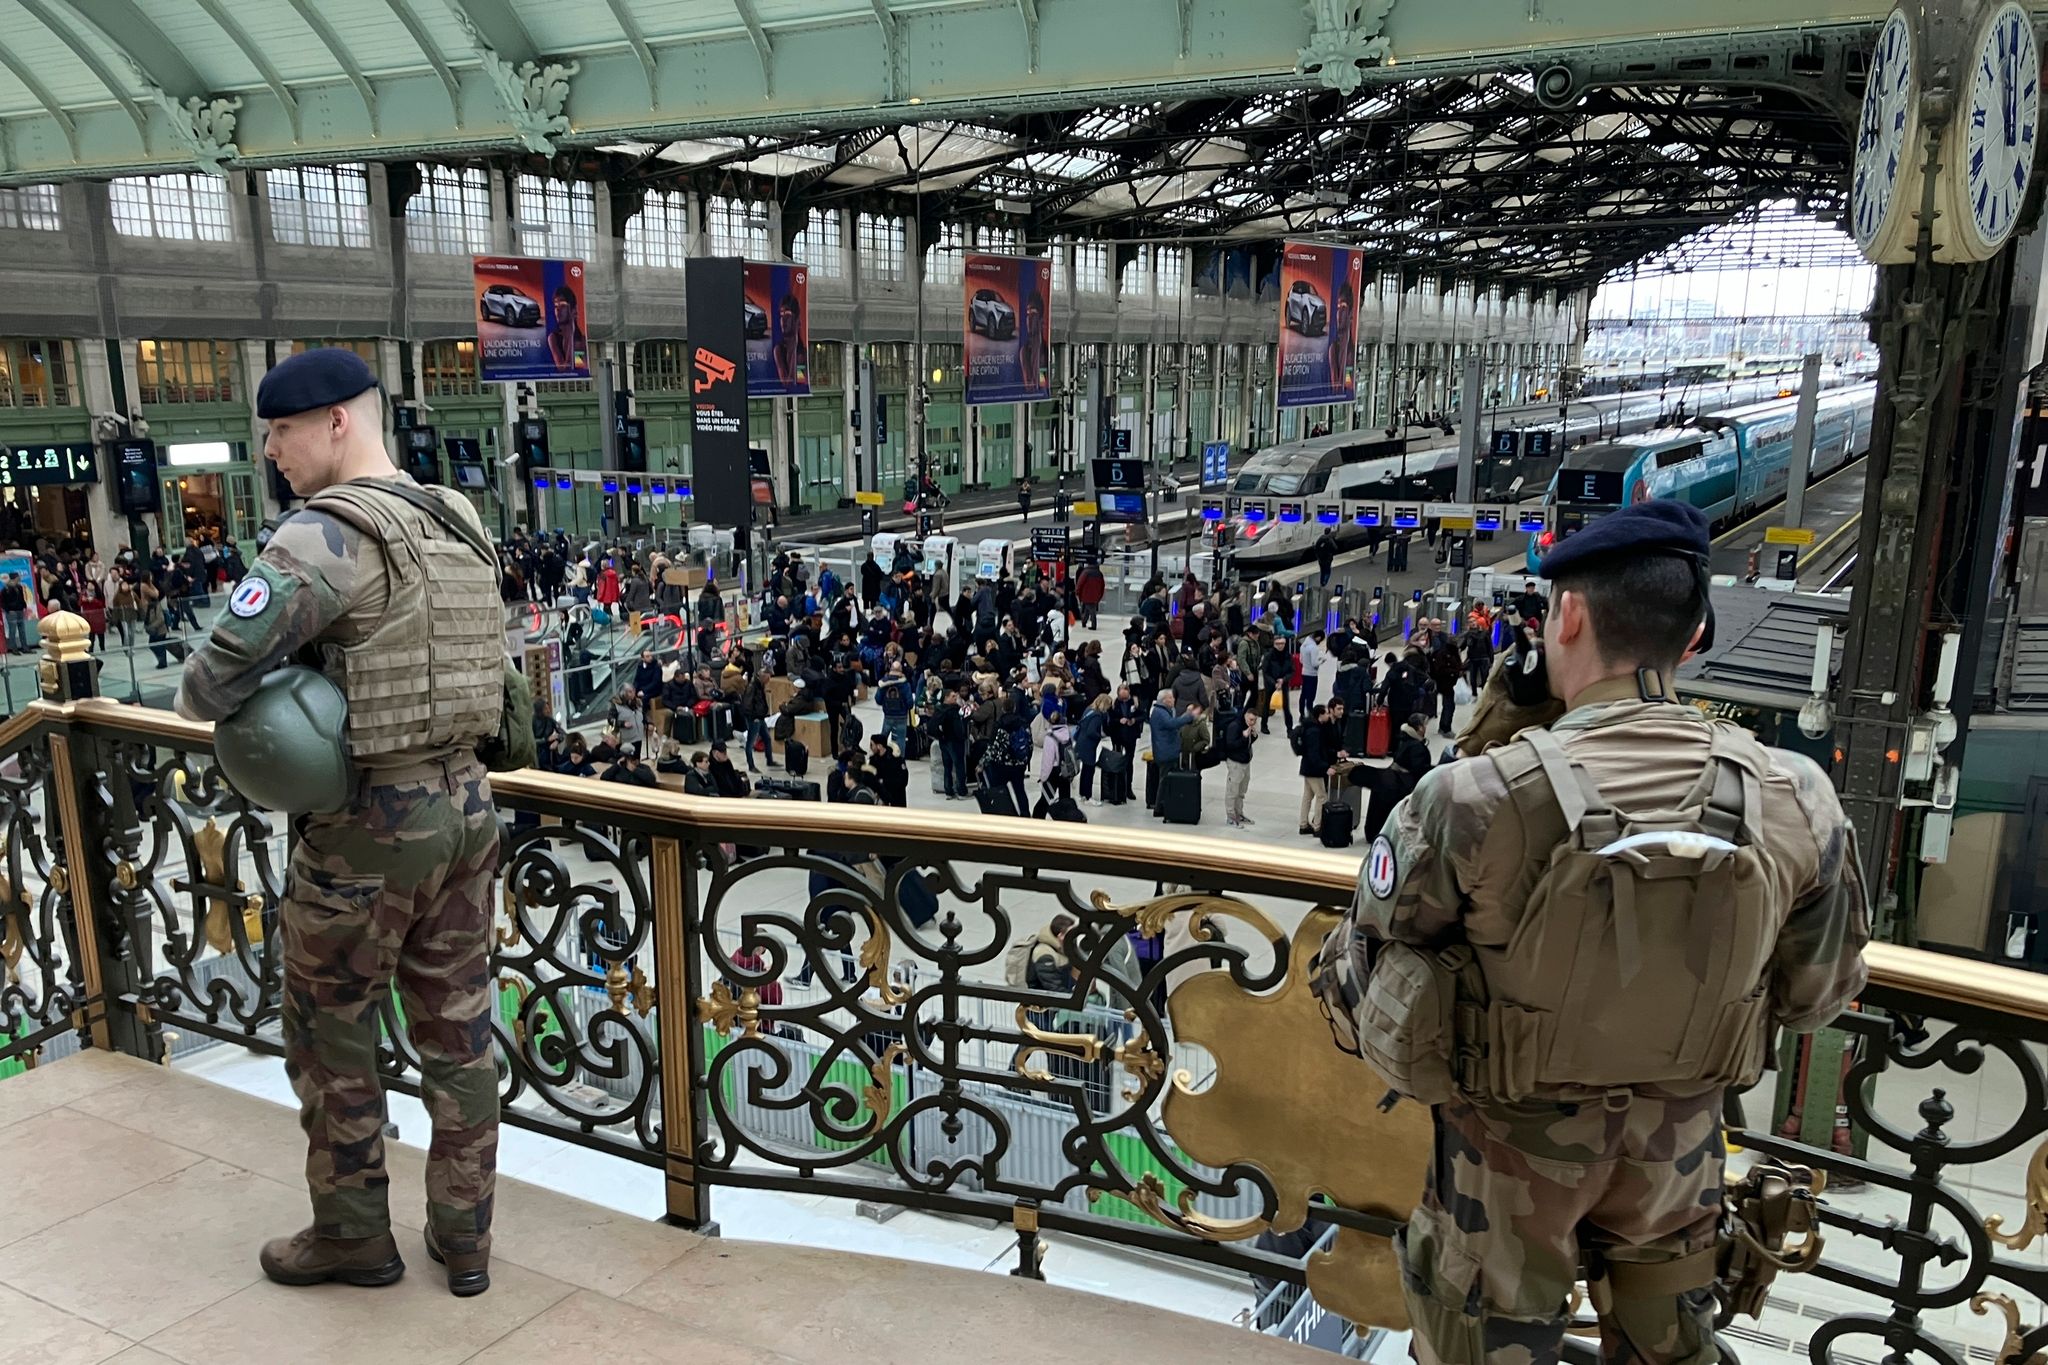 Soldaten patrouillieren nach einer Messerattacke im Pariser Hauptbahnhof Gare de Lyon, bei der drei Menschen verletzt worden sind.